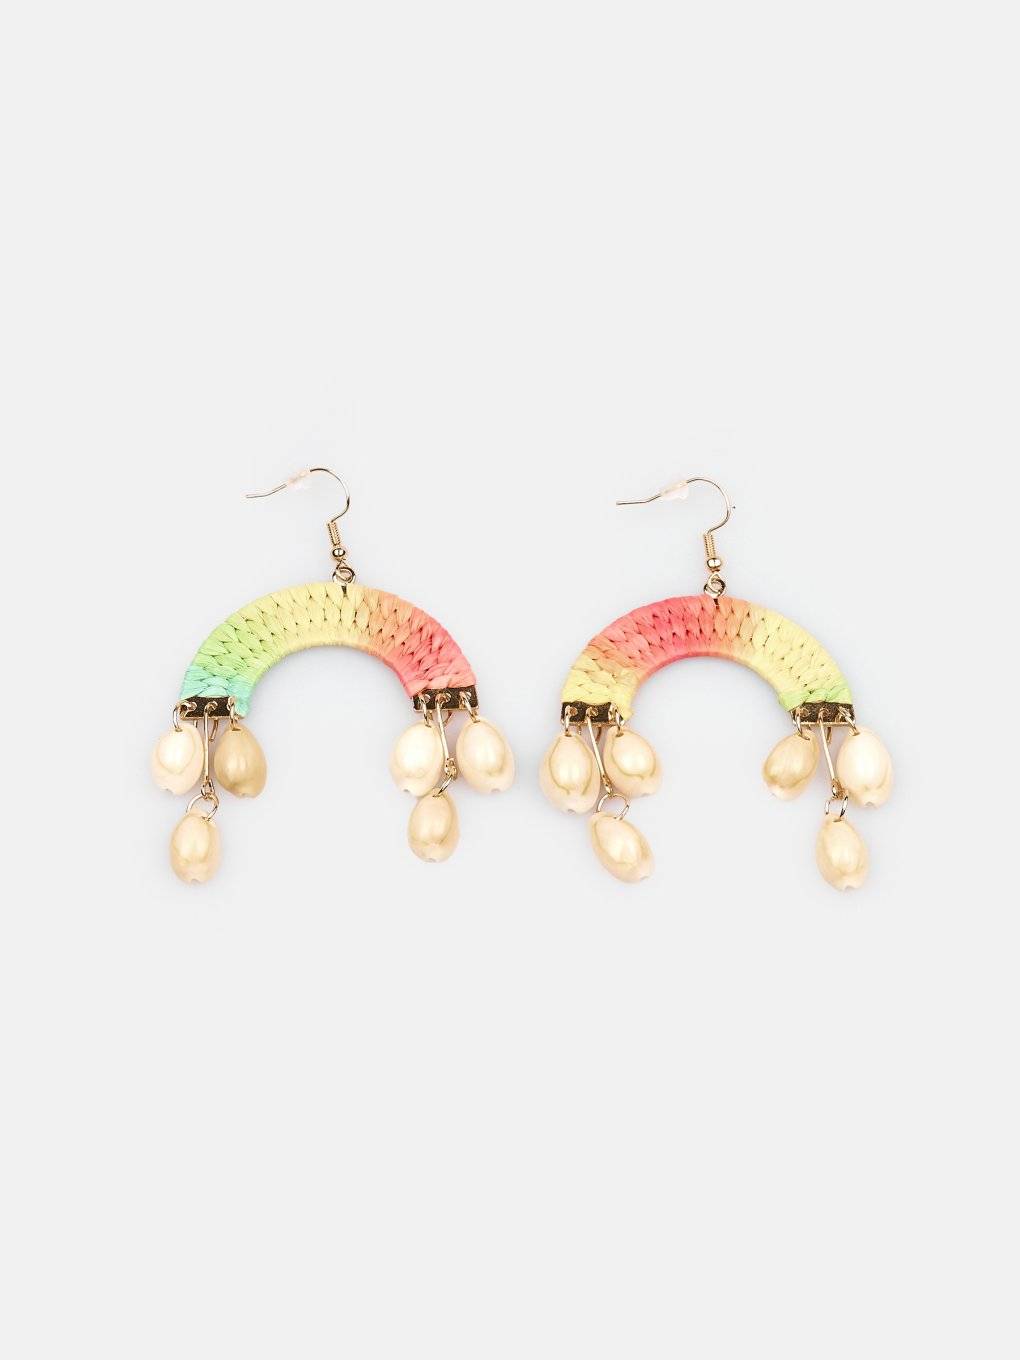 Earrings with seashells